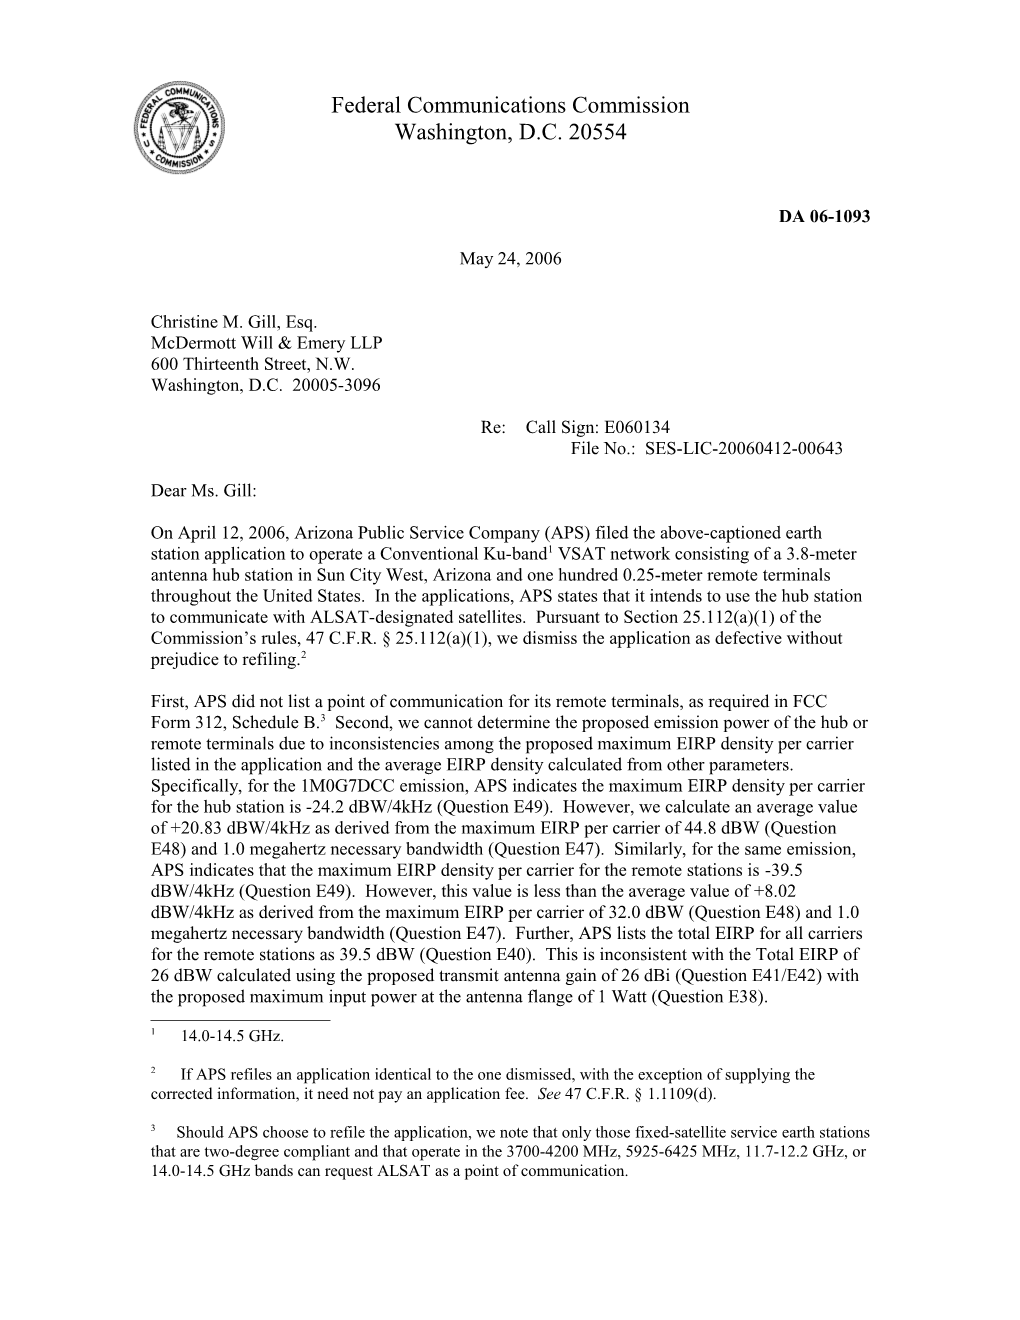 Federal Communications Commission DA 06-1093